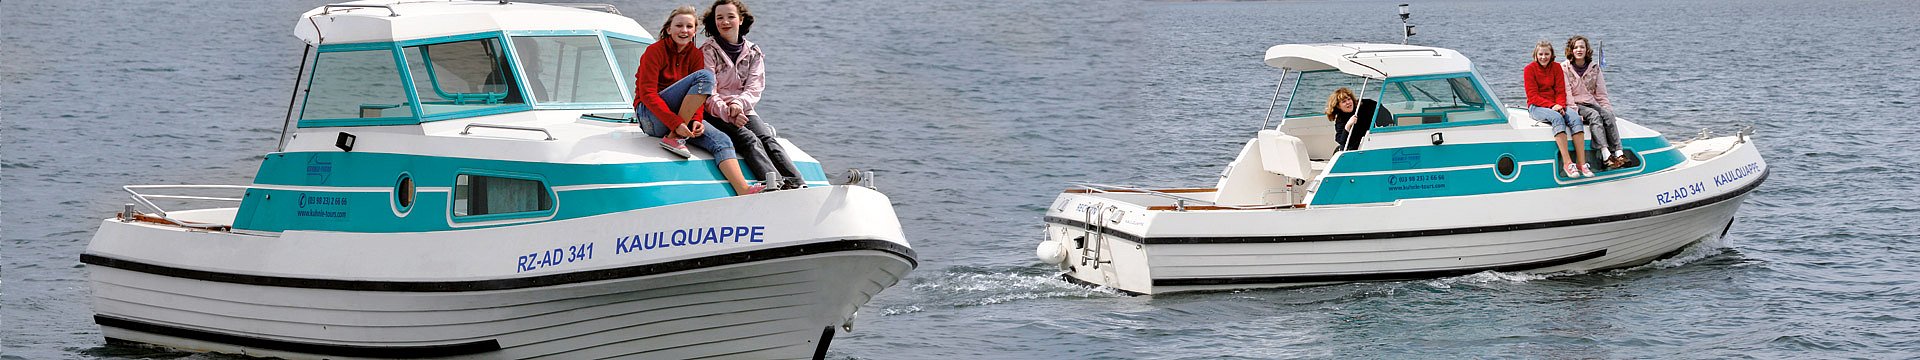 Zwei bellus-Boote der Firma Kuhnle-Tours auf einem See